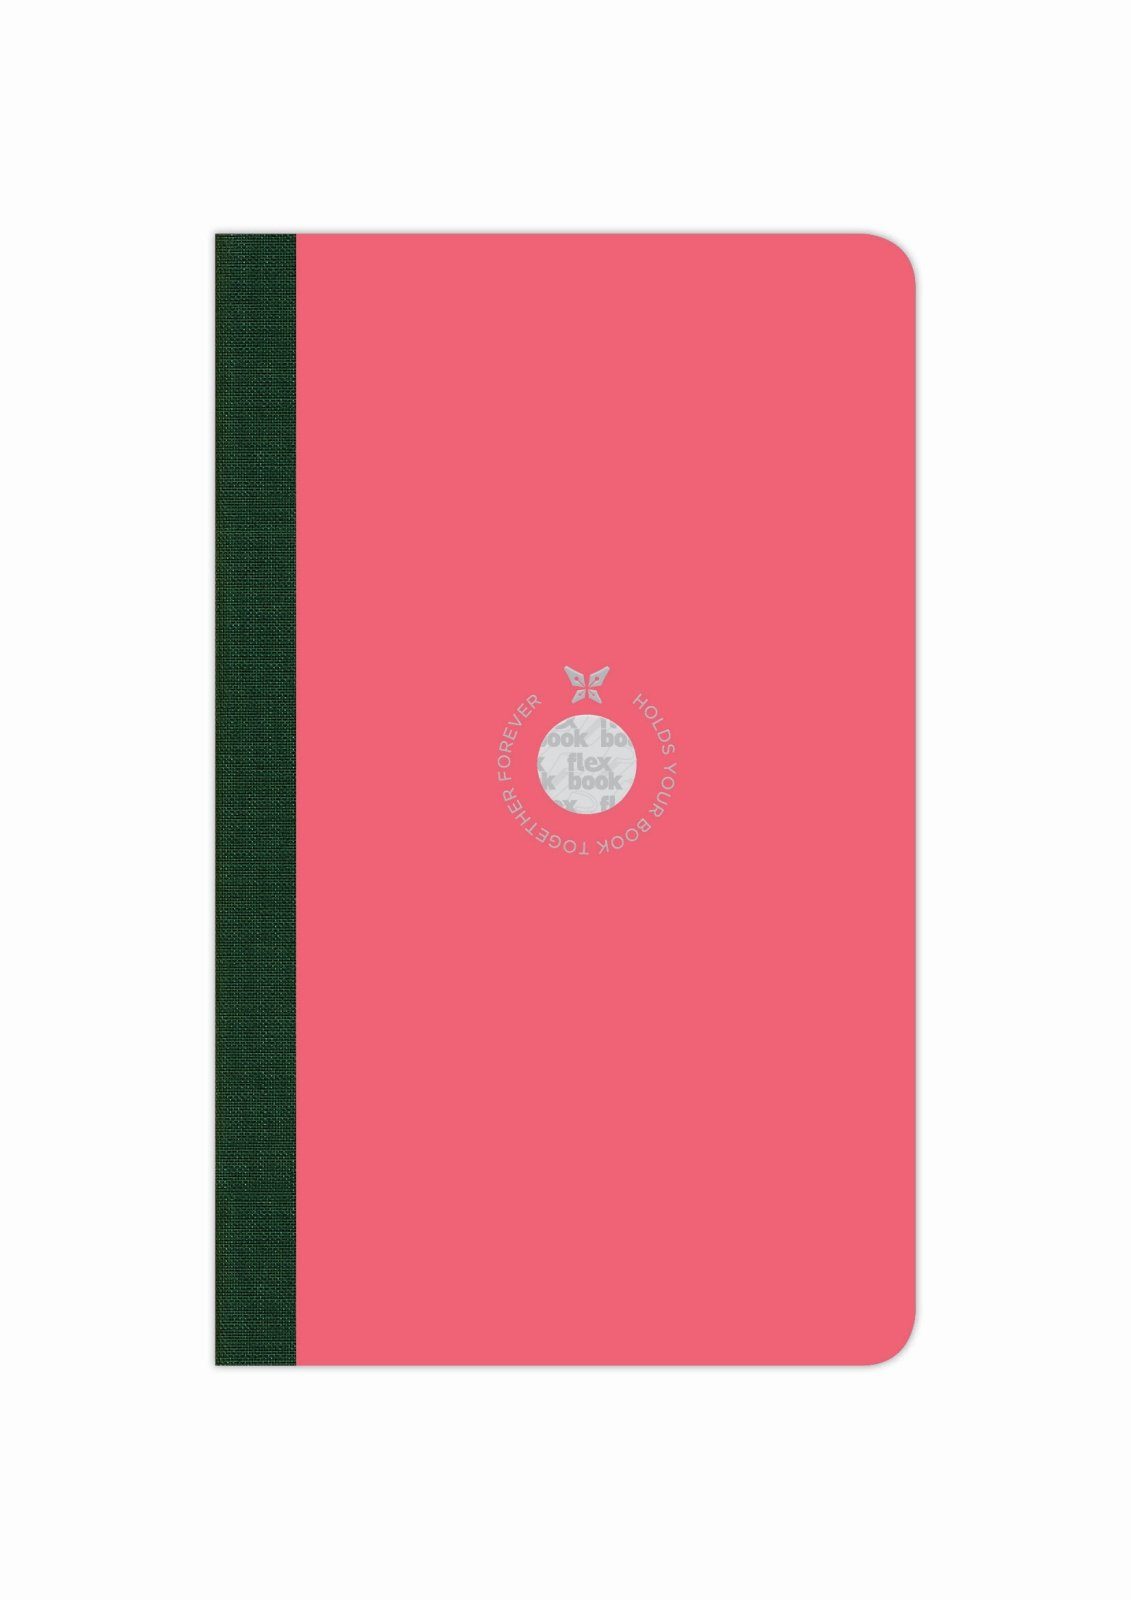 Flexbook Notizbuch Flexbook Smartbook Liniert 160 Seiten Ökopapiereinband viele Größen/Fa Pink 13*21cm